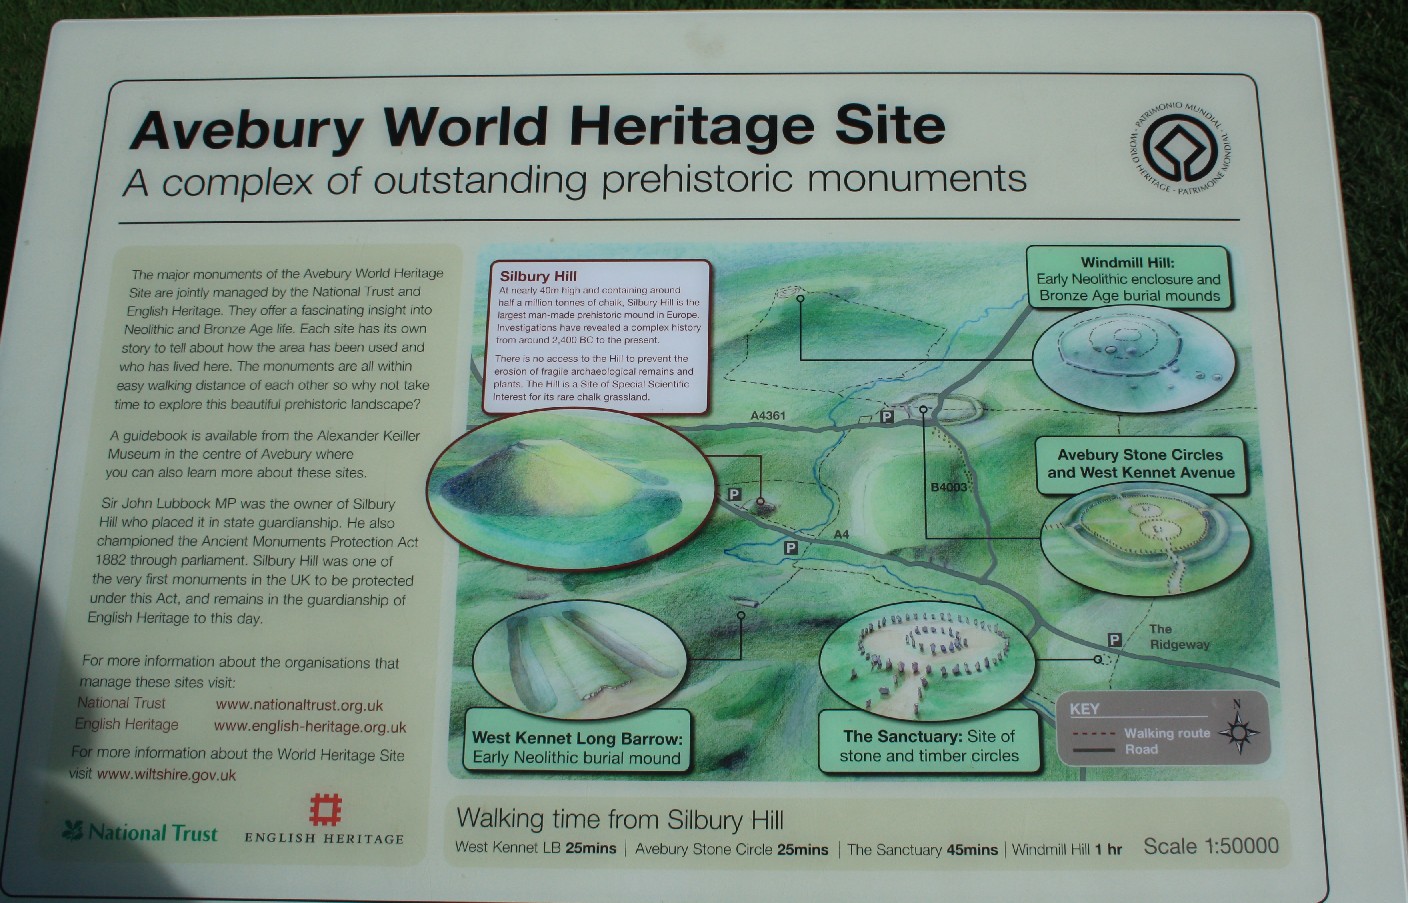 Avebury ist mehr als ein großer Steinkreis: Fünf prähistorische Monumente zählen zur World Heritage Site. (Avebury is more than a giant stone circle - there are four associated sites of prehistoric interest.)